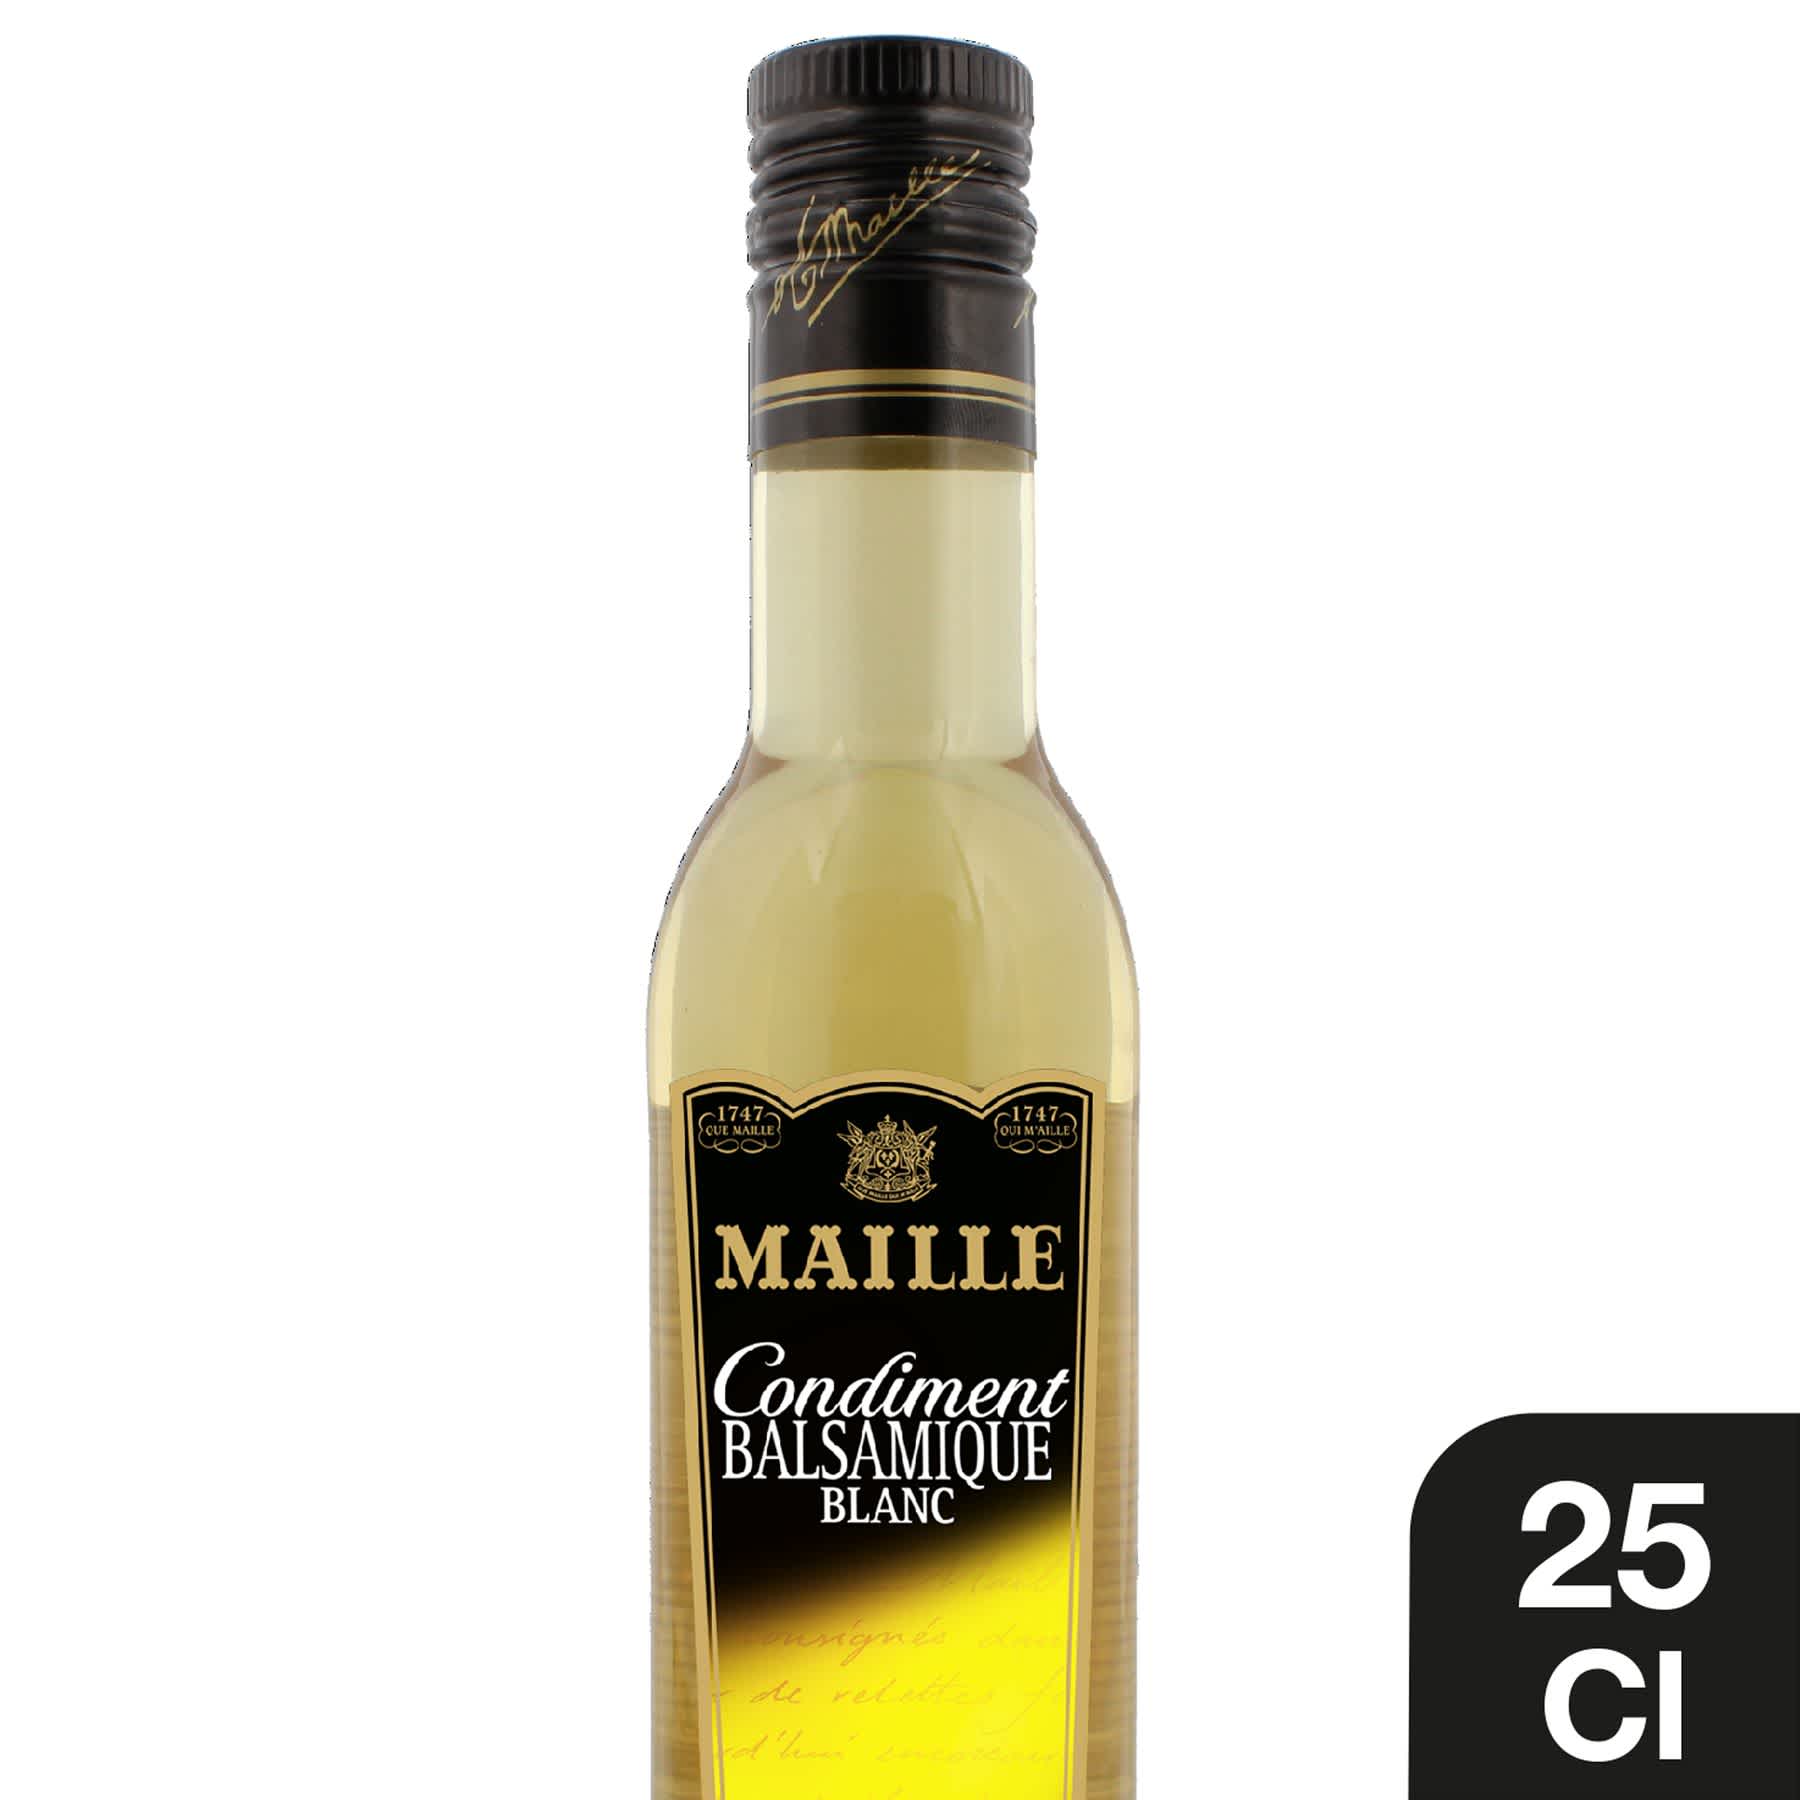 Maille Condiment Balsamique Blanc 25 cl1